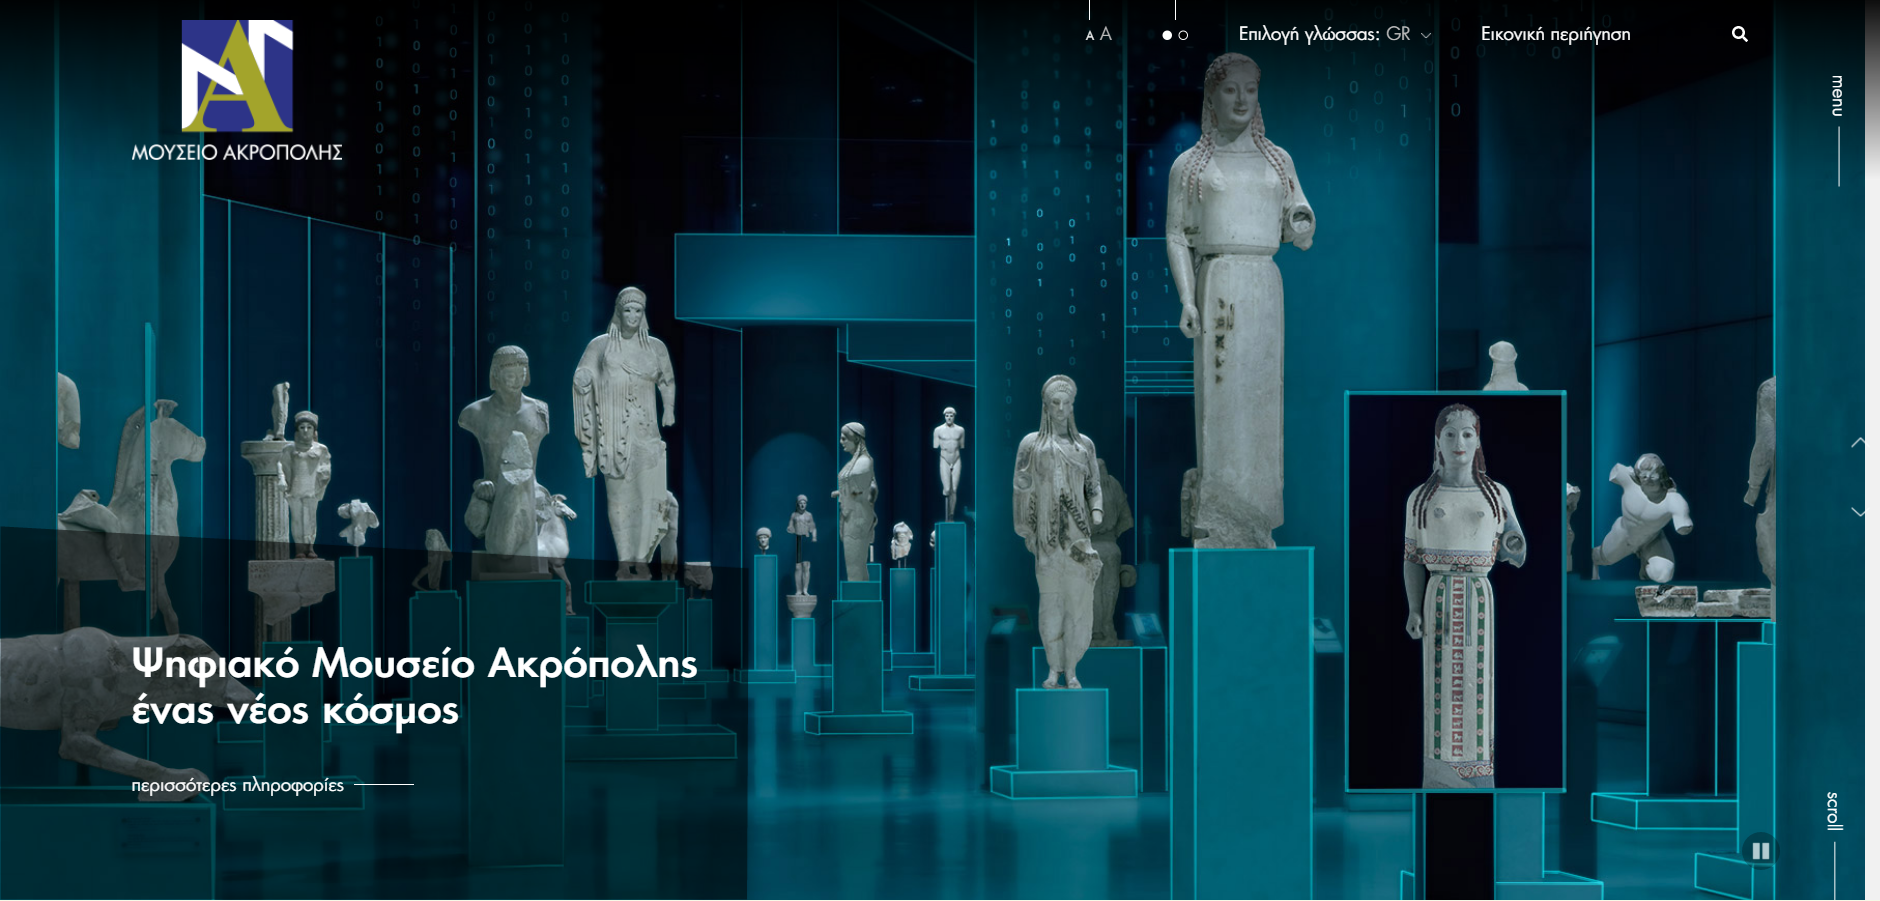 Ψηφιακό Μουσείο Ακρόπολης